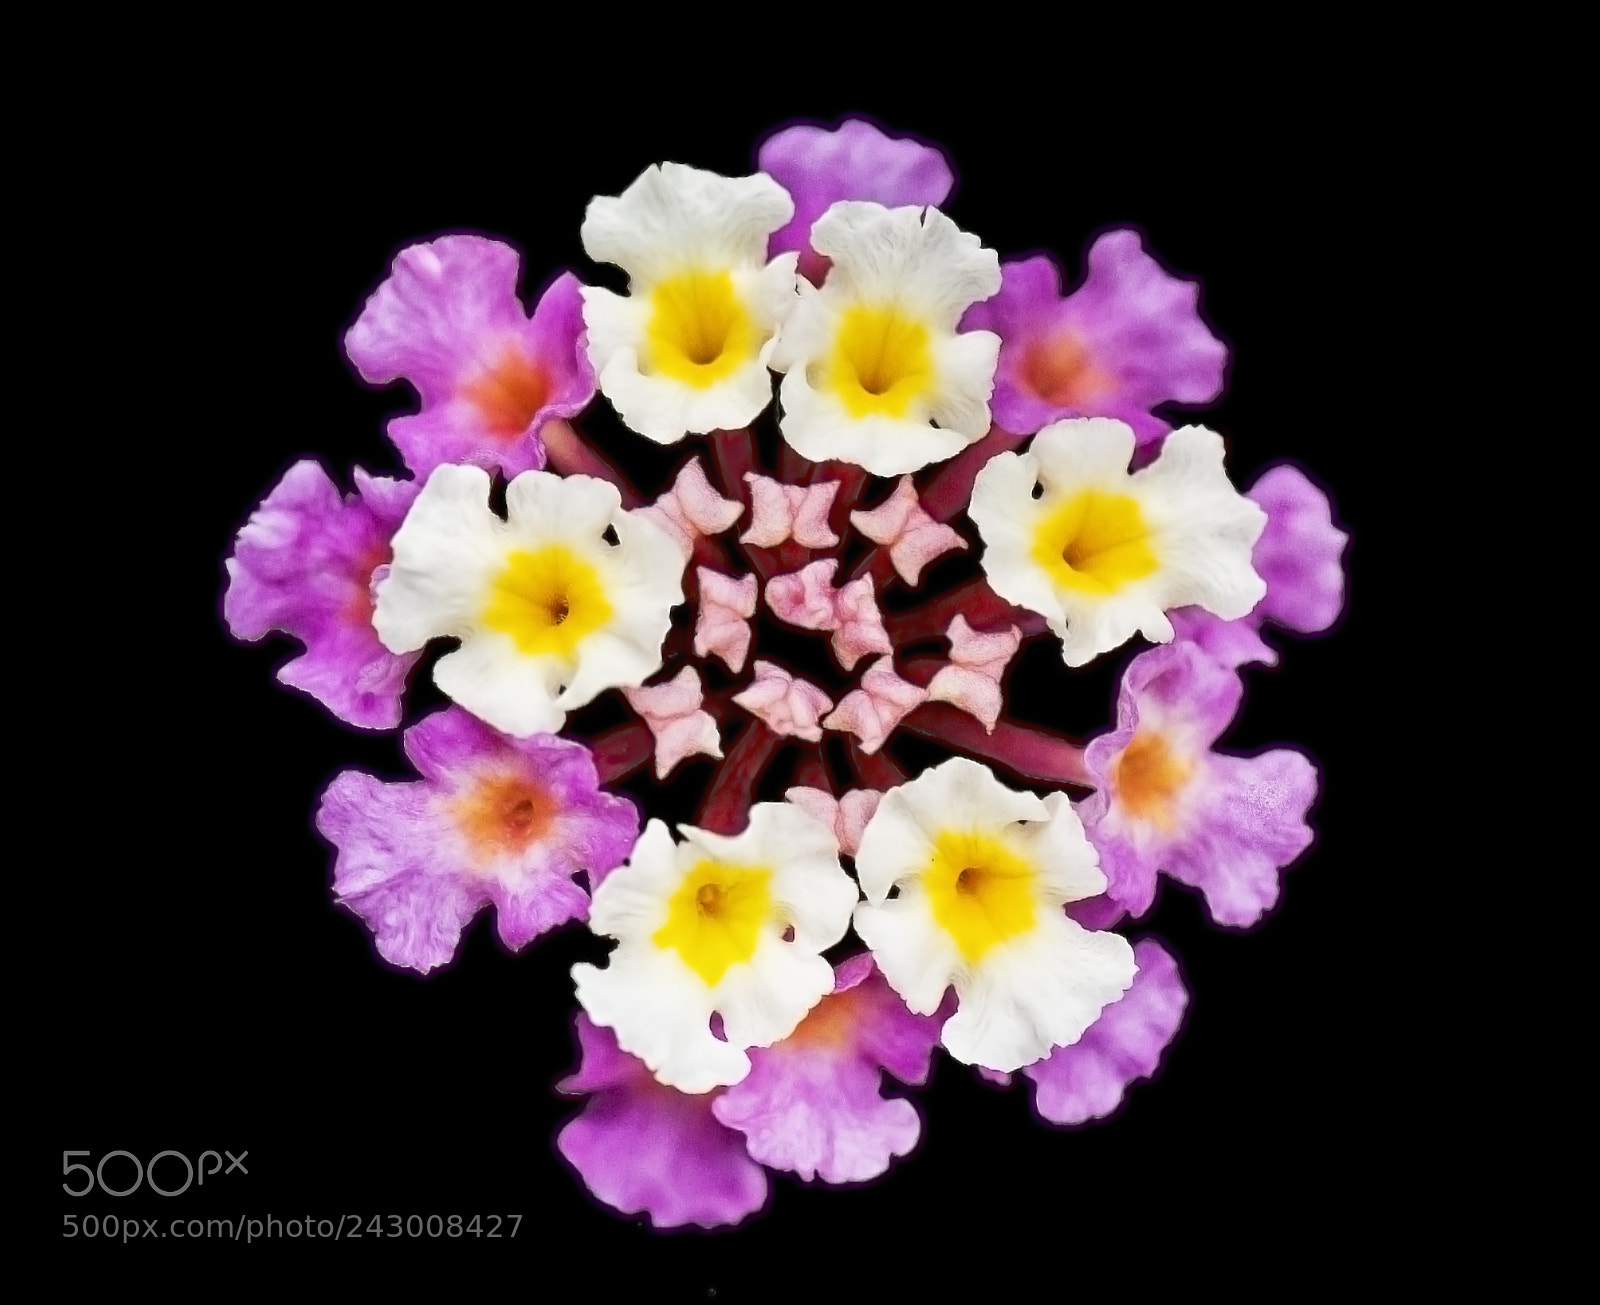 Nikon D90 sample photo. Floral kaleidoscope photography